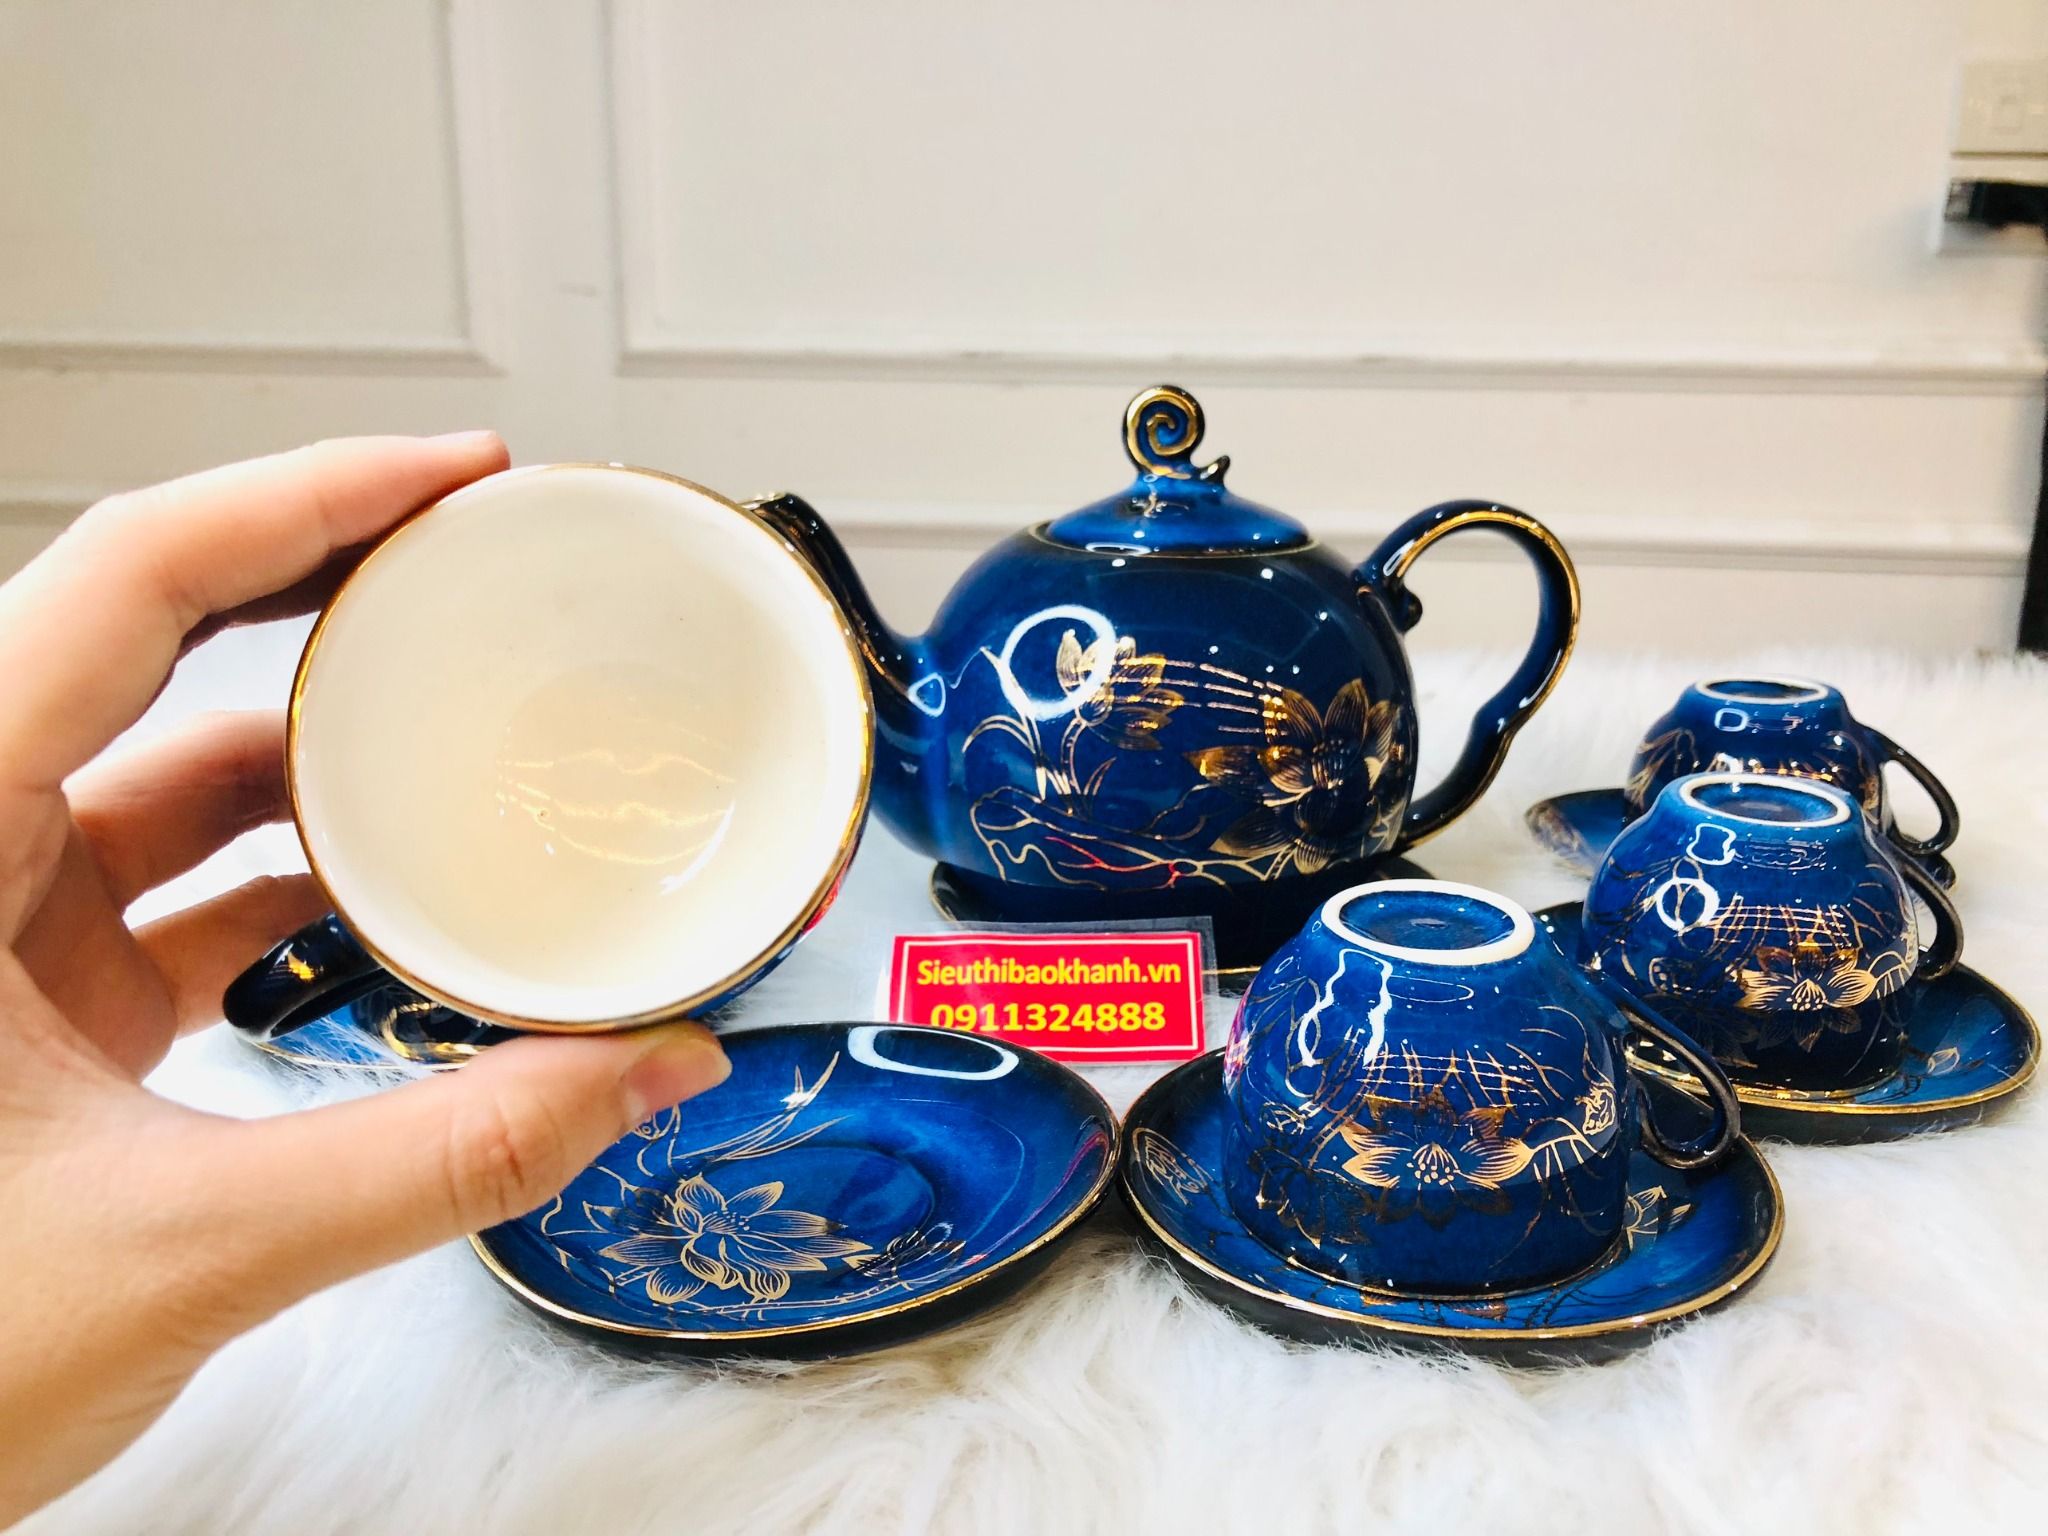  Bộ ấm chén,ấm trà Đẹp chính hãng Bát Tràng-Gốm sứ Bảo Khánh 